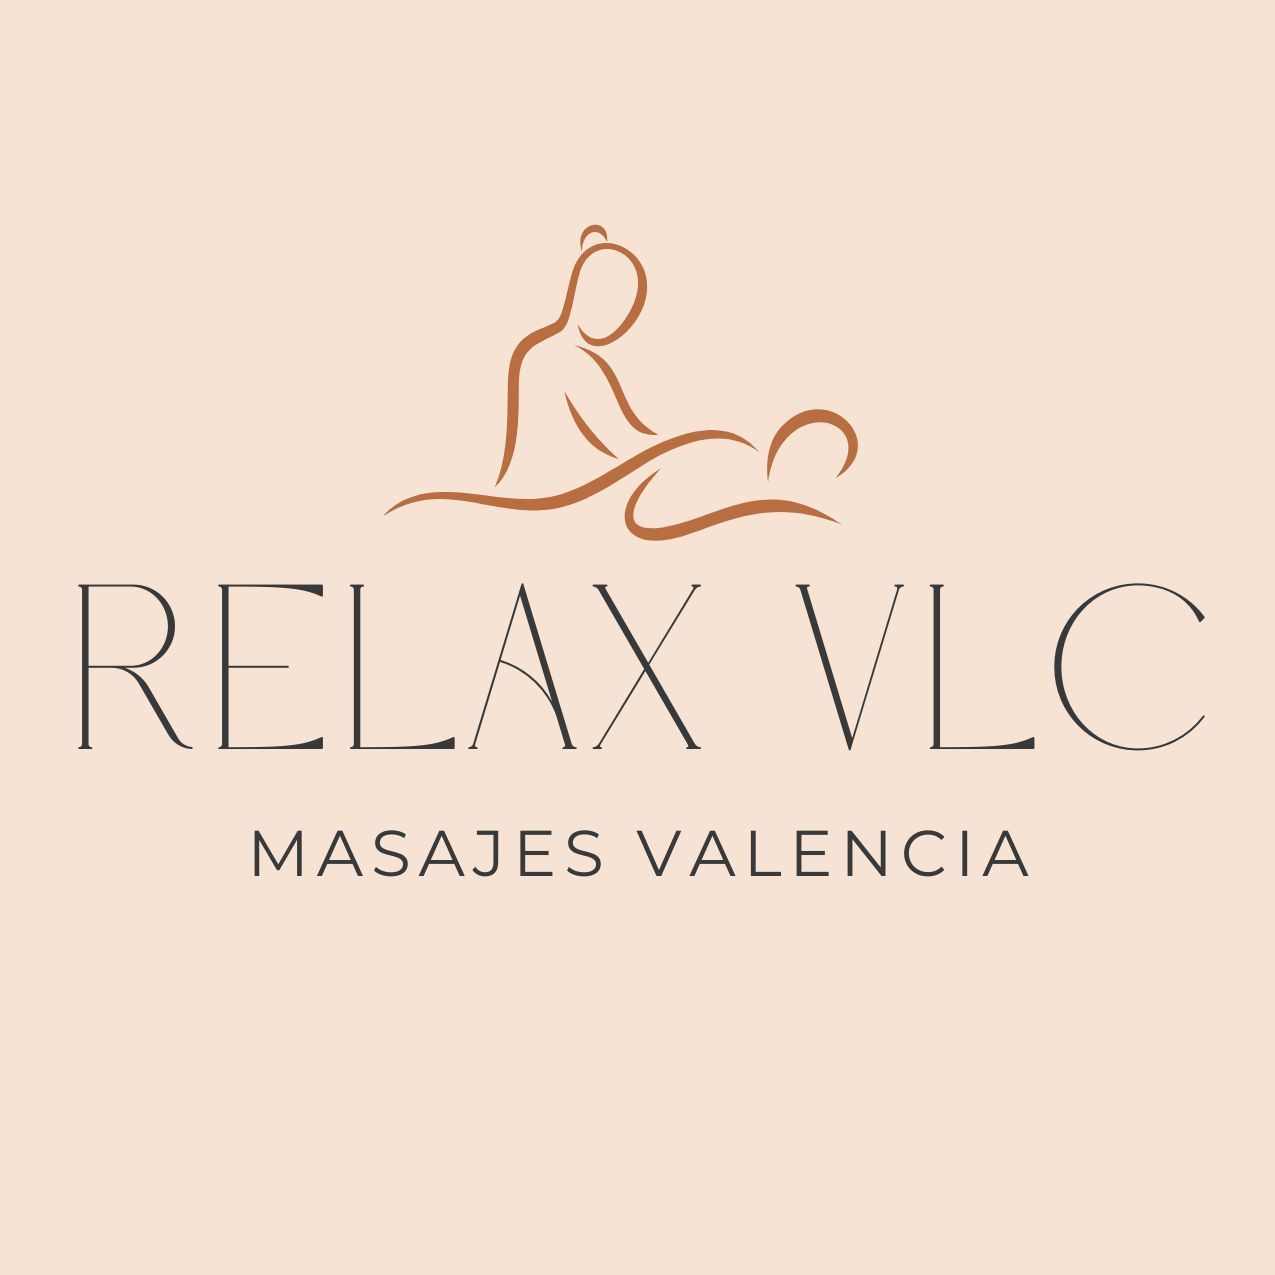 Relax VLC, Calle San Vicente Martir 24, Piso 5, Puerta 10, 46002, Valencia